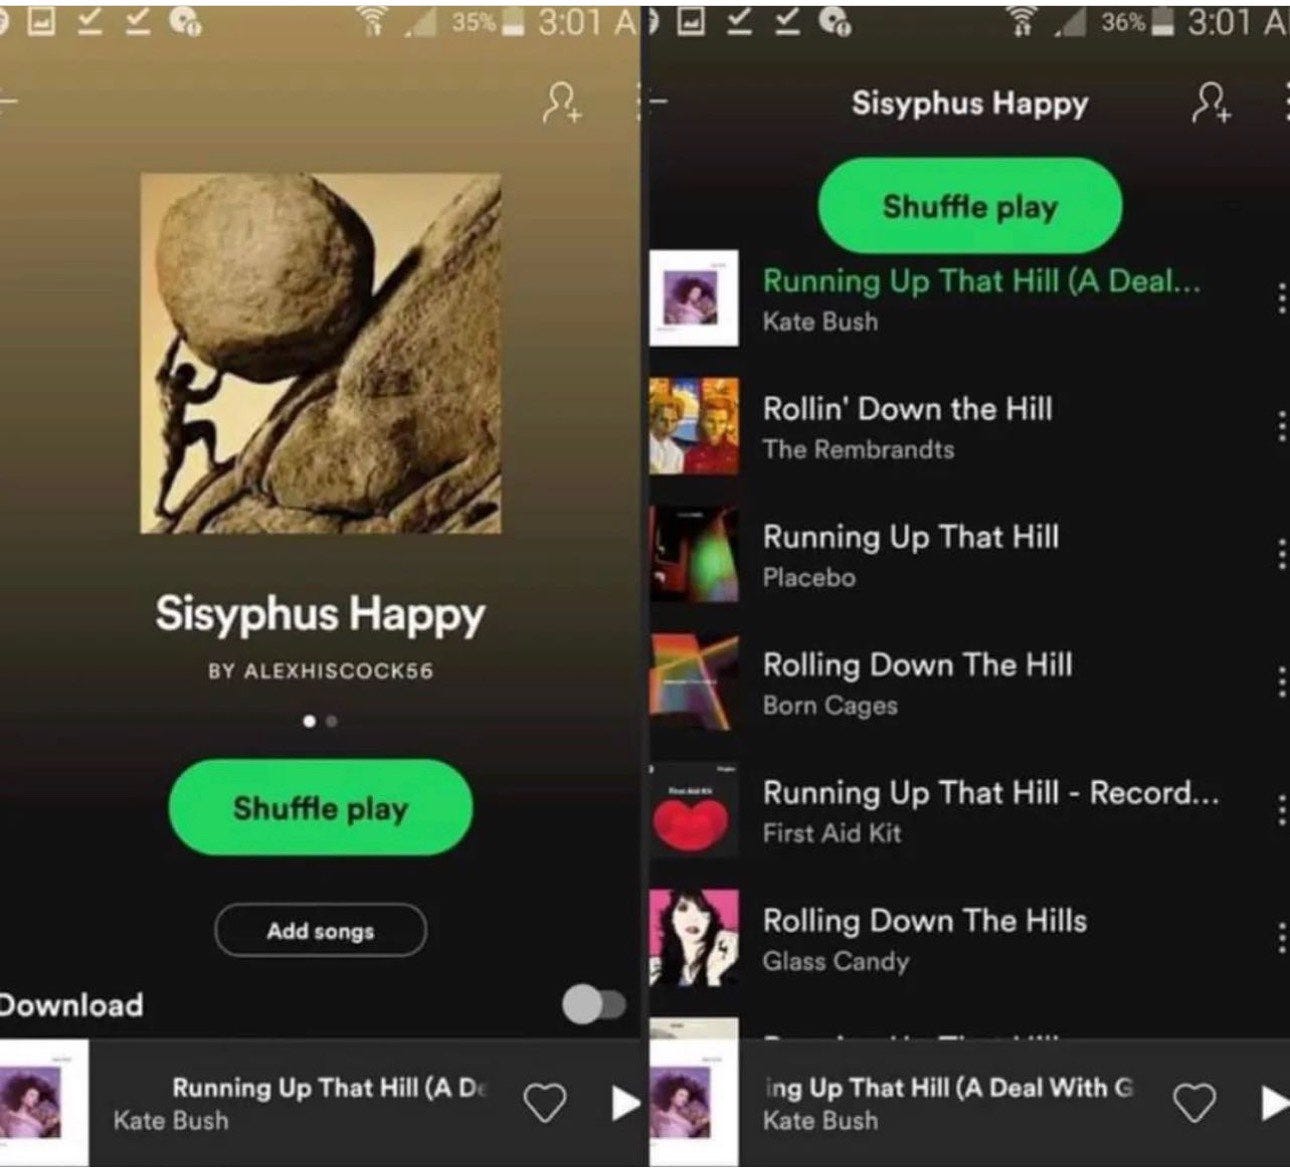 The Sisyphus Happy playlist